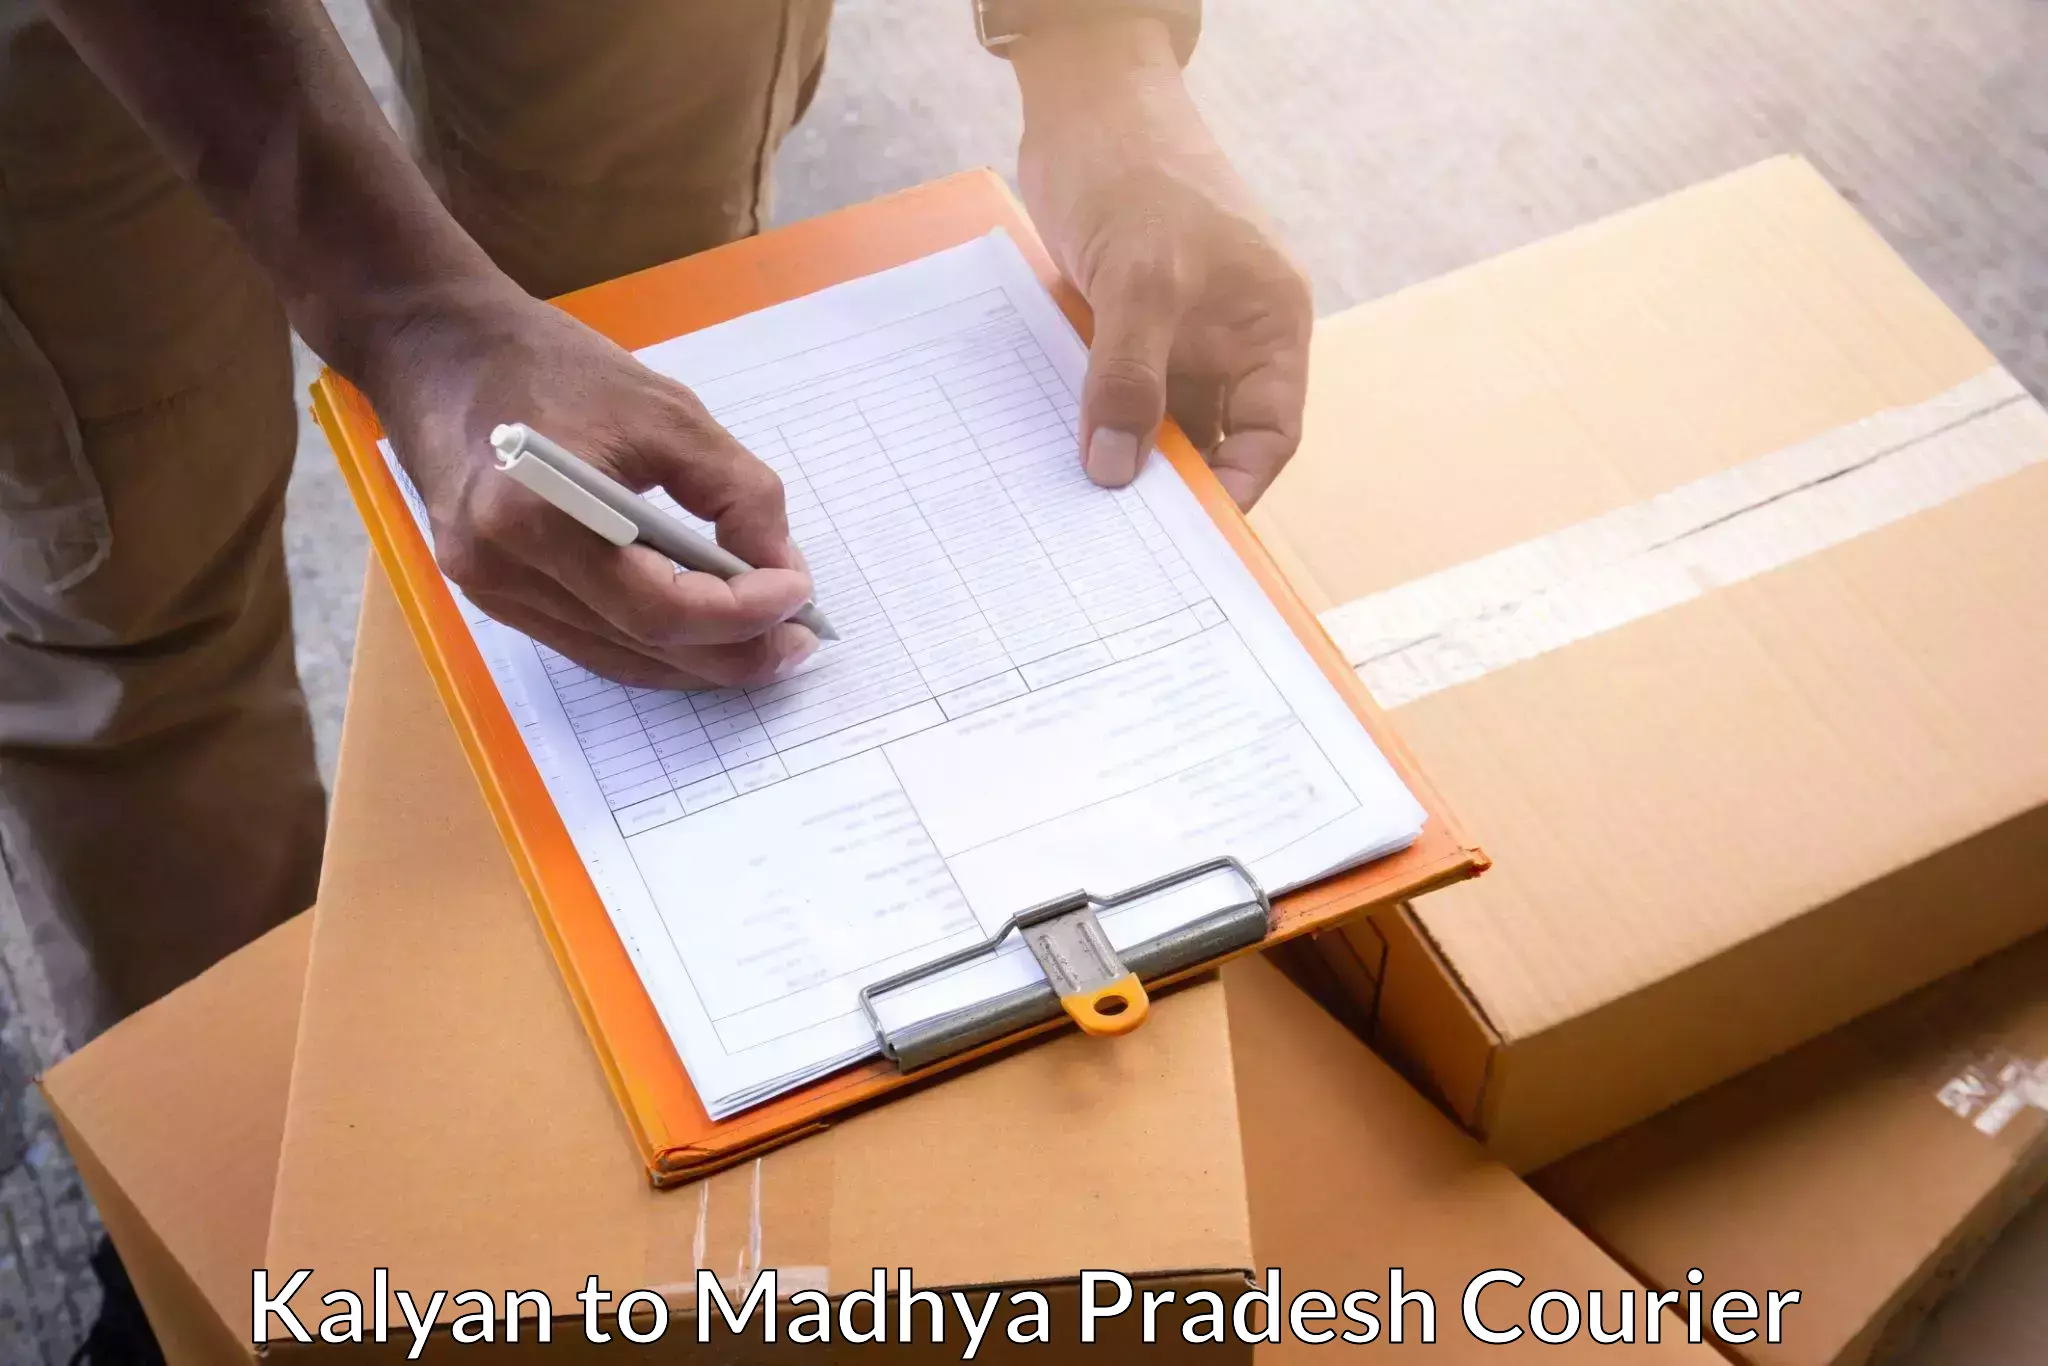 Online courier booking Kalyan to Jaisinghnagar